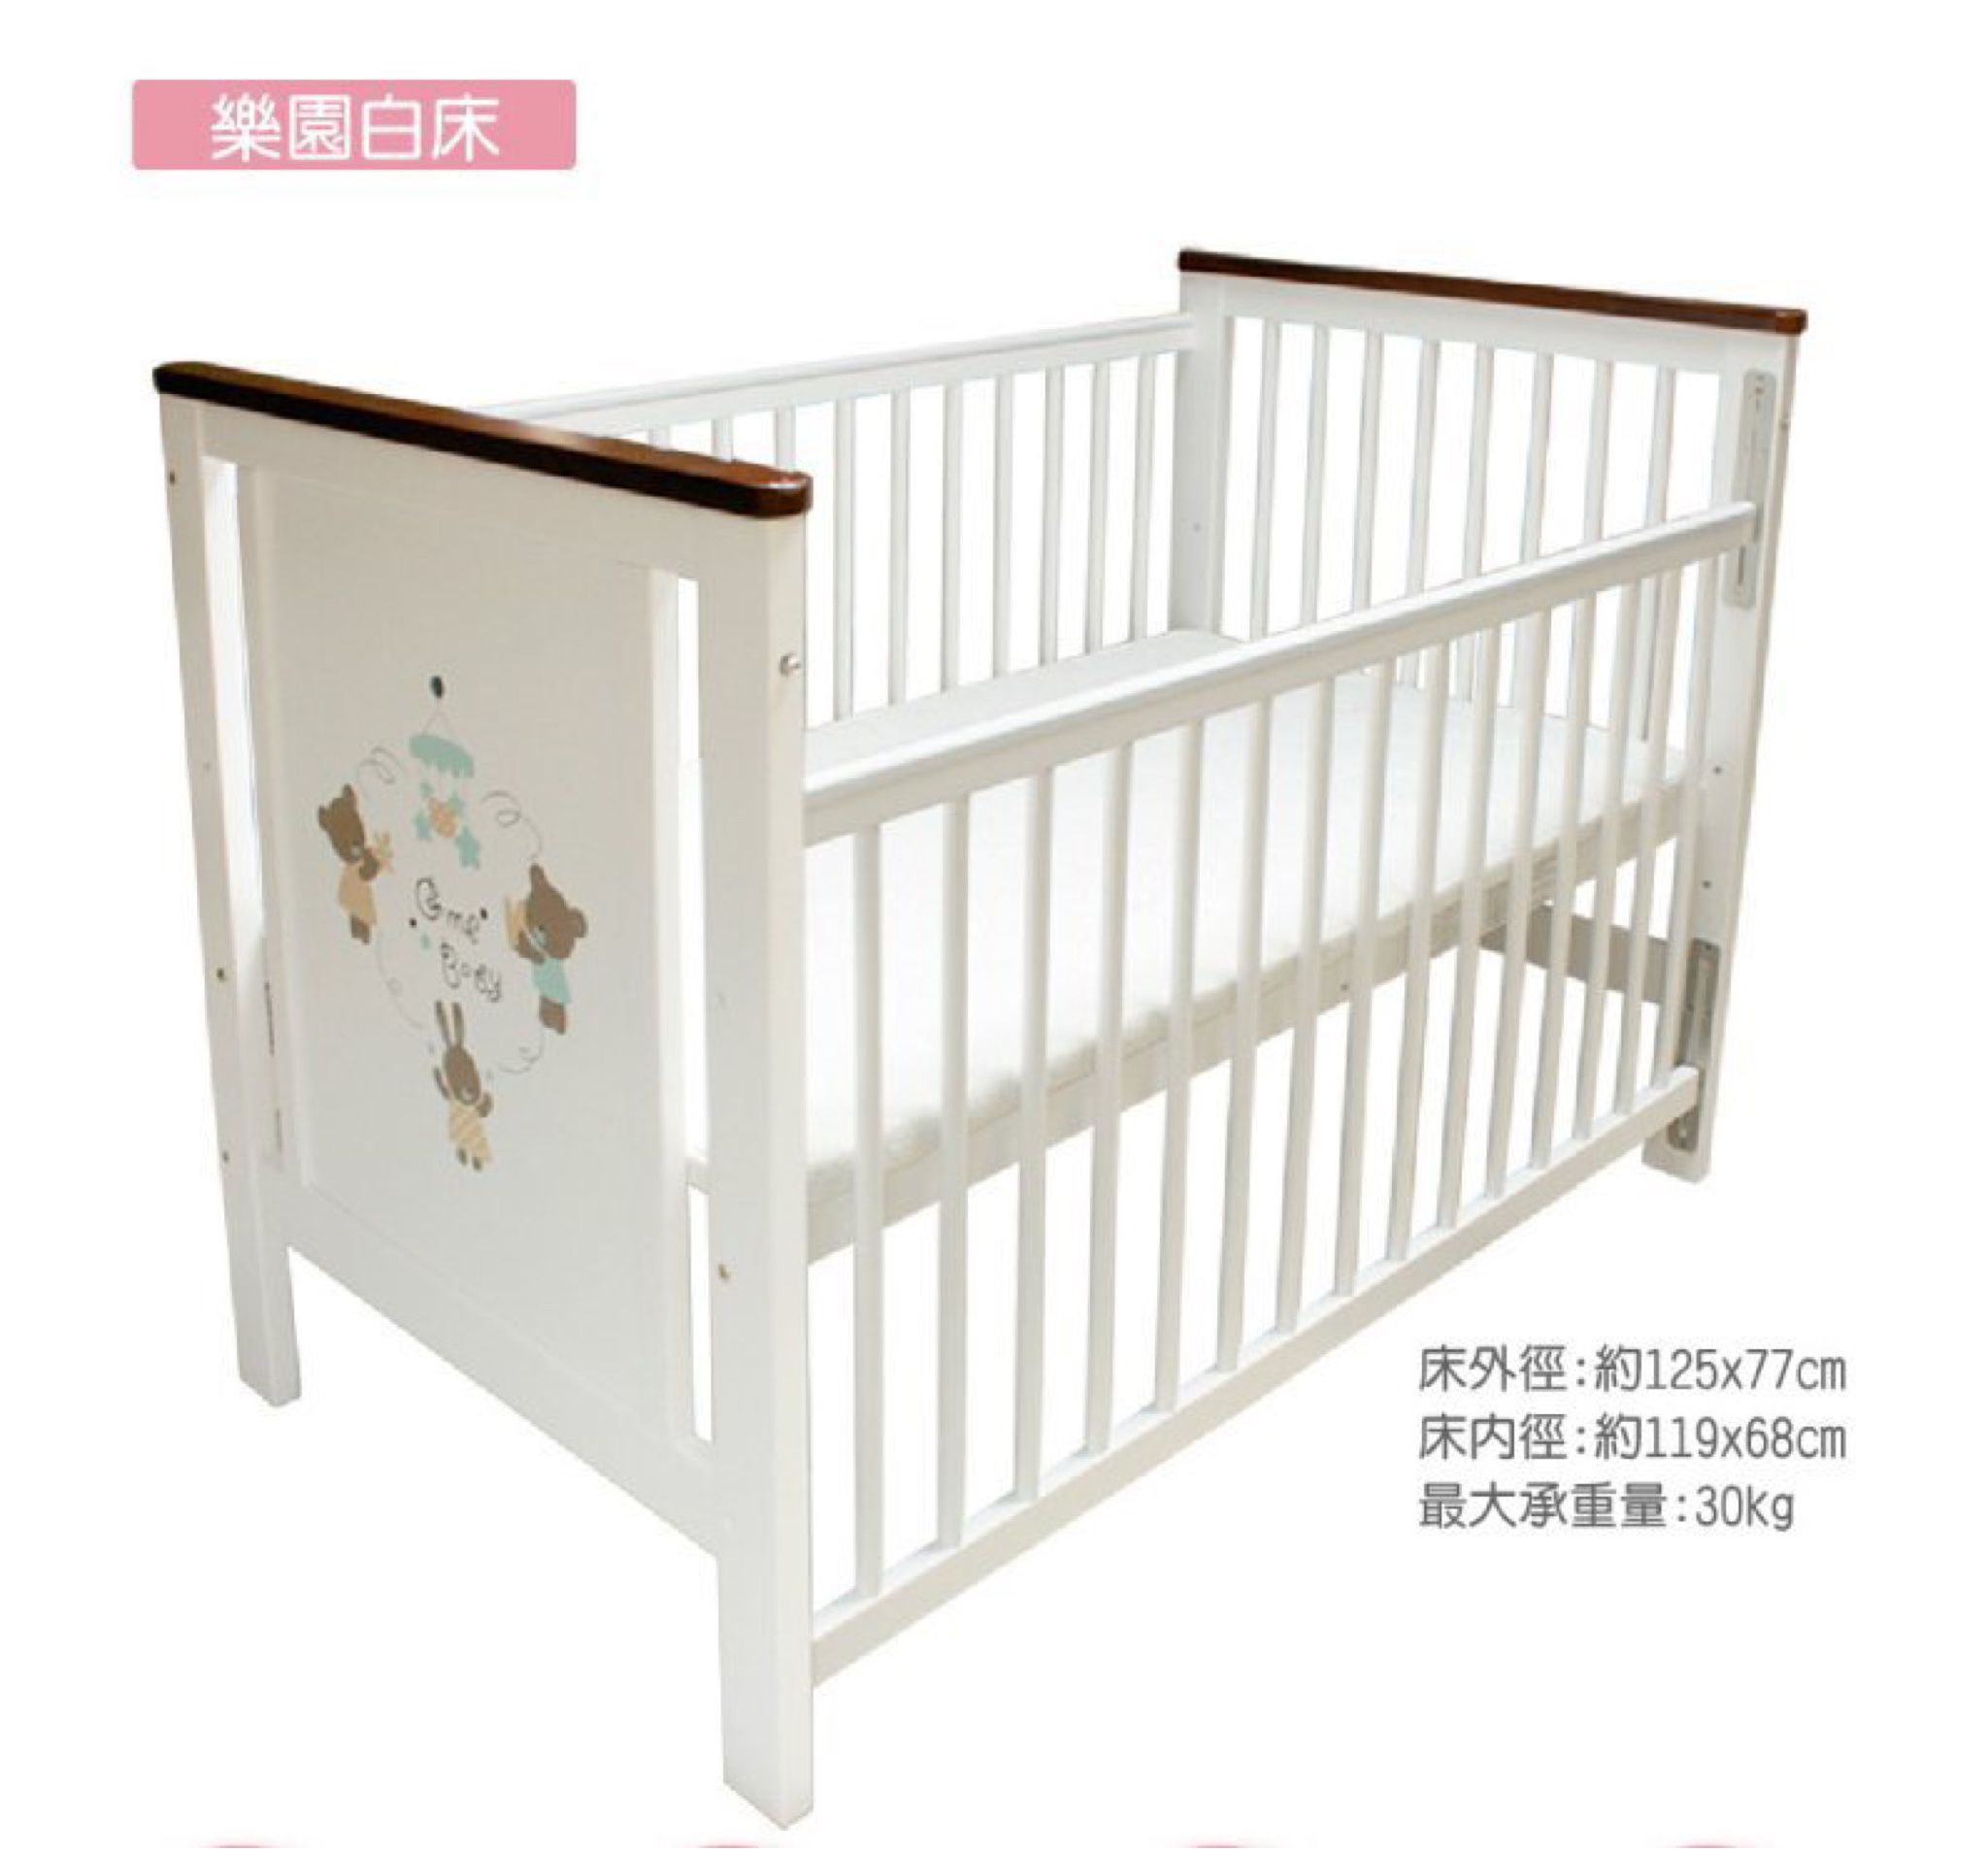 金寶貝 嬰兒床 GMP BABY 熊兔樂園 大床 白色 木床 (含床墊、側板) 二手品